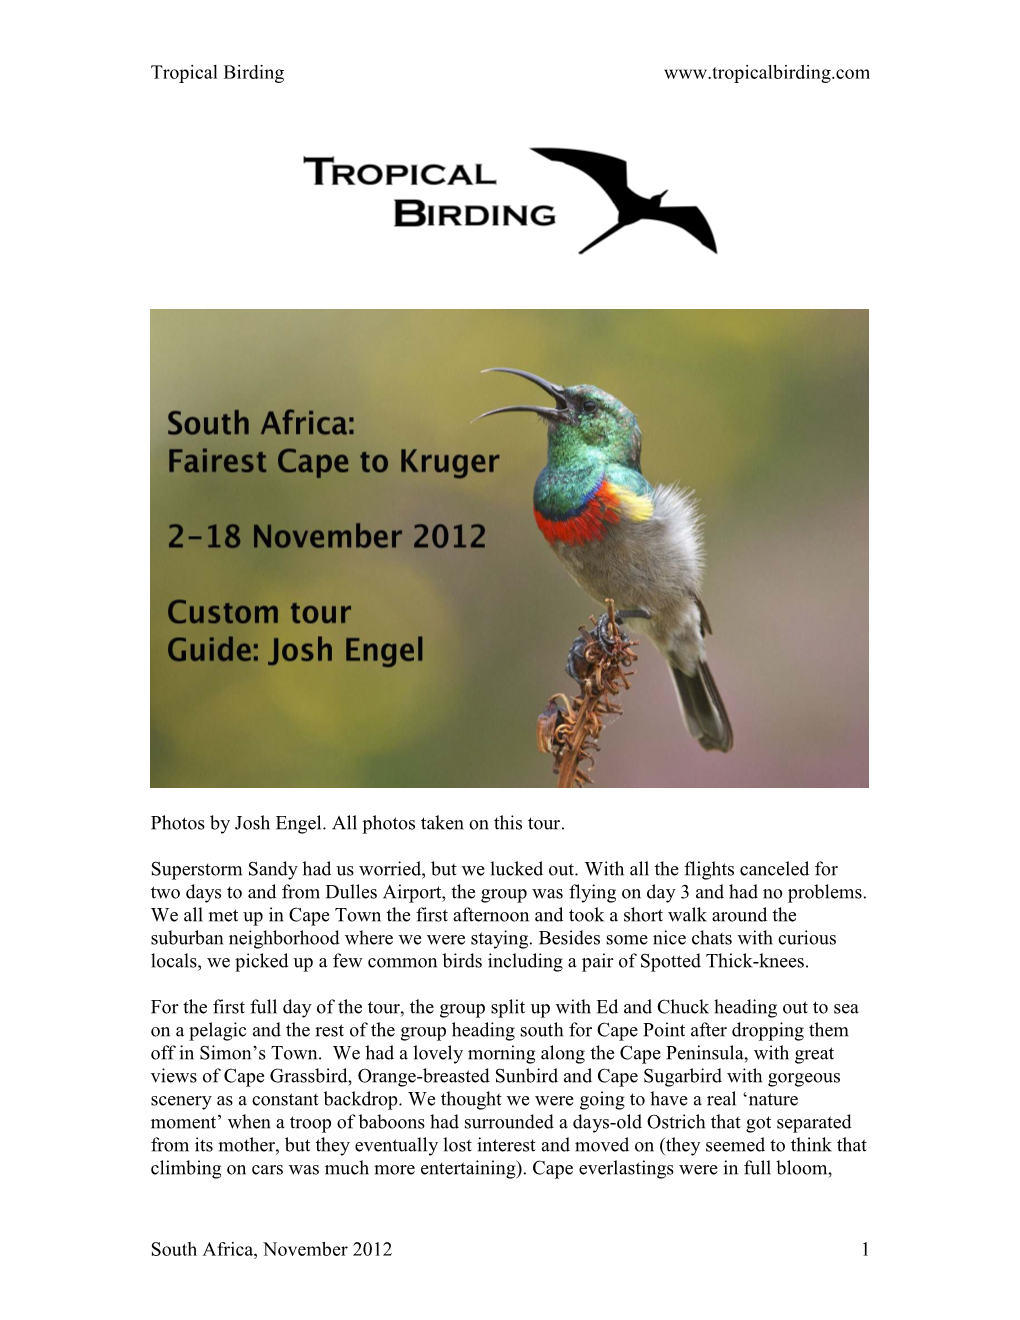 Tropical Birding South Africa, November